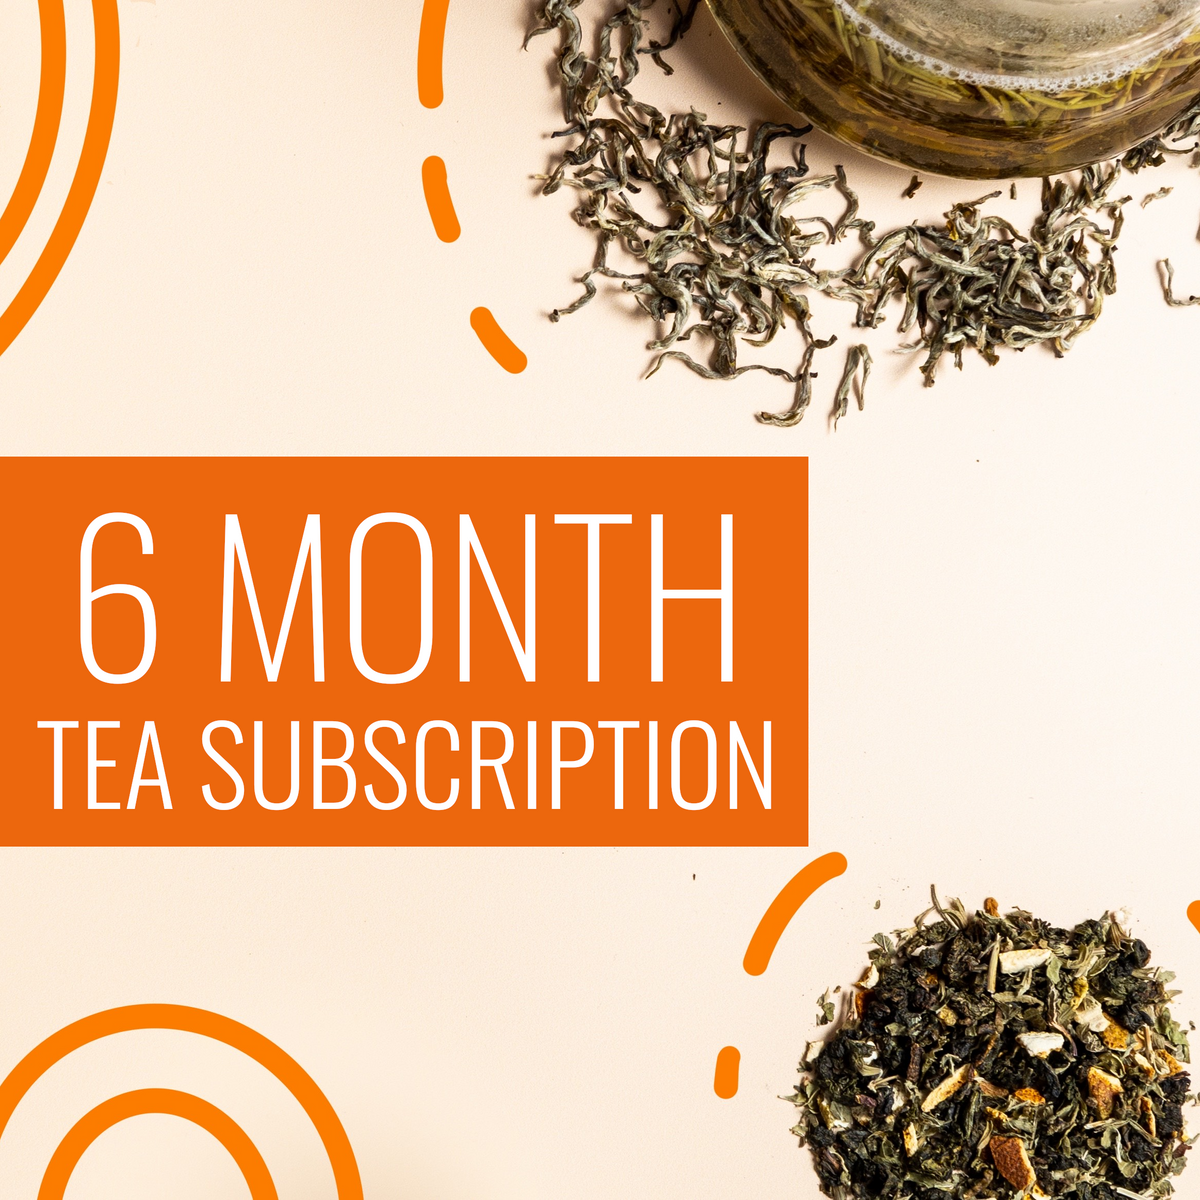 6 Month Tea Subscription